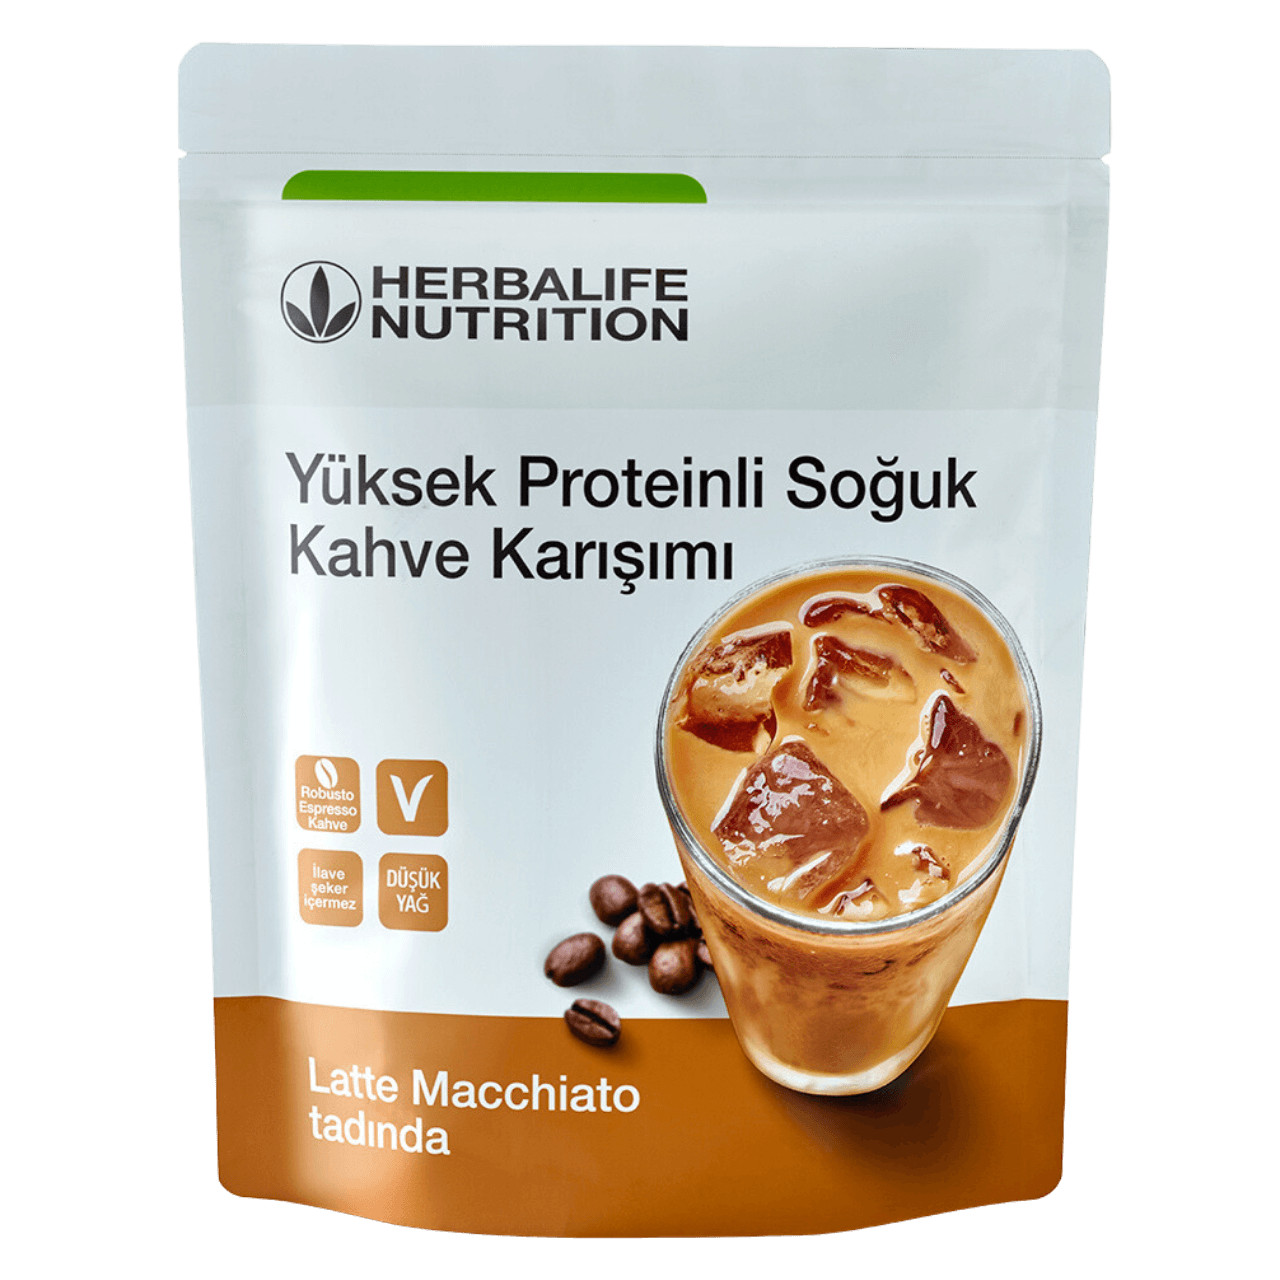 Herbalife yüksek proteinli soğuk kahve.